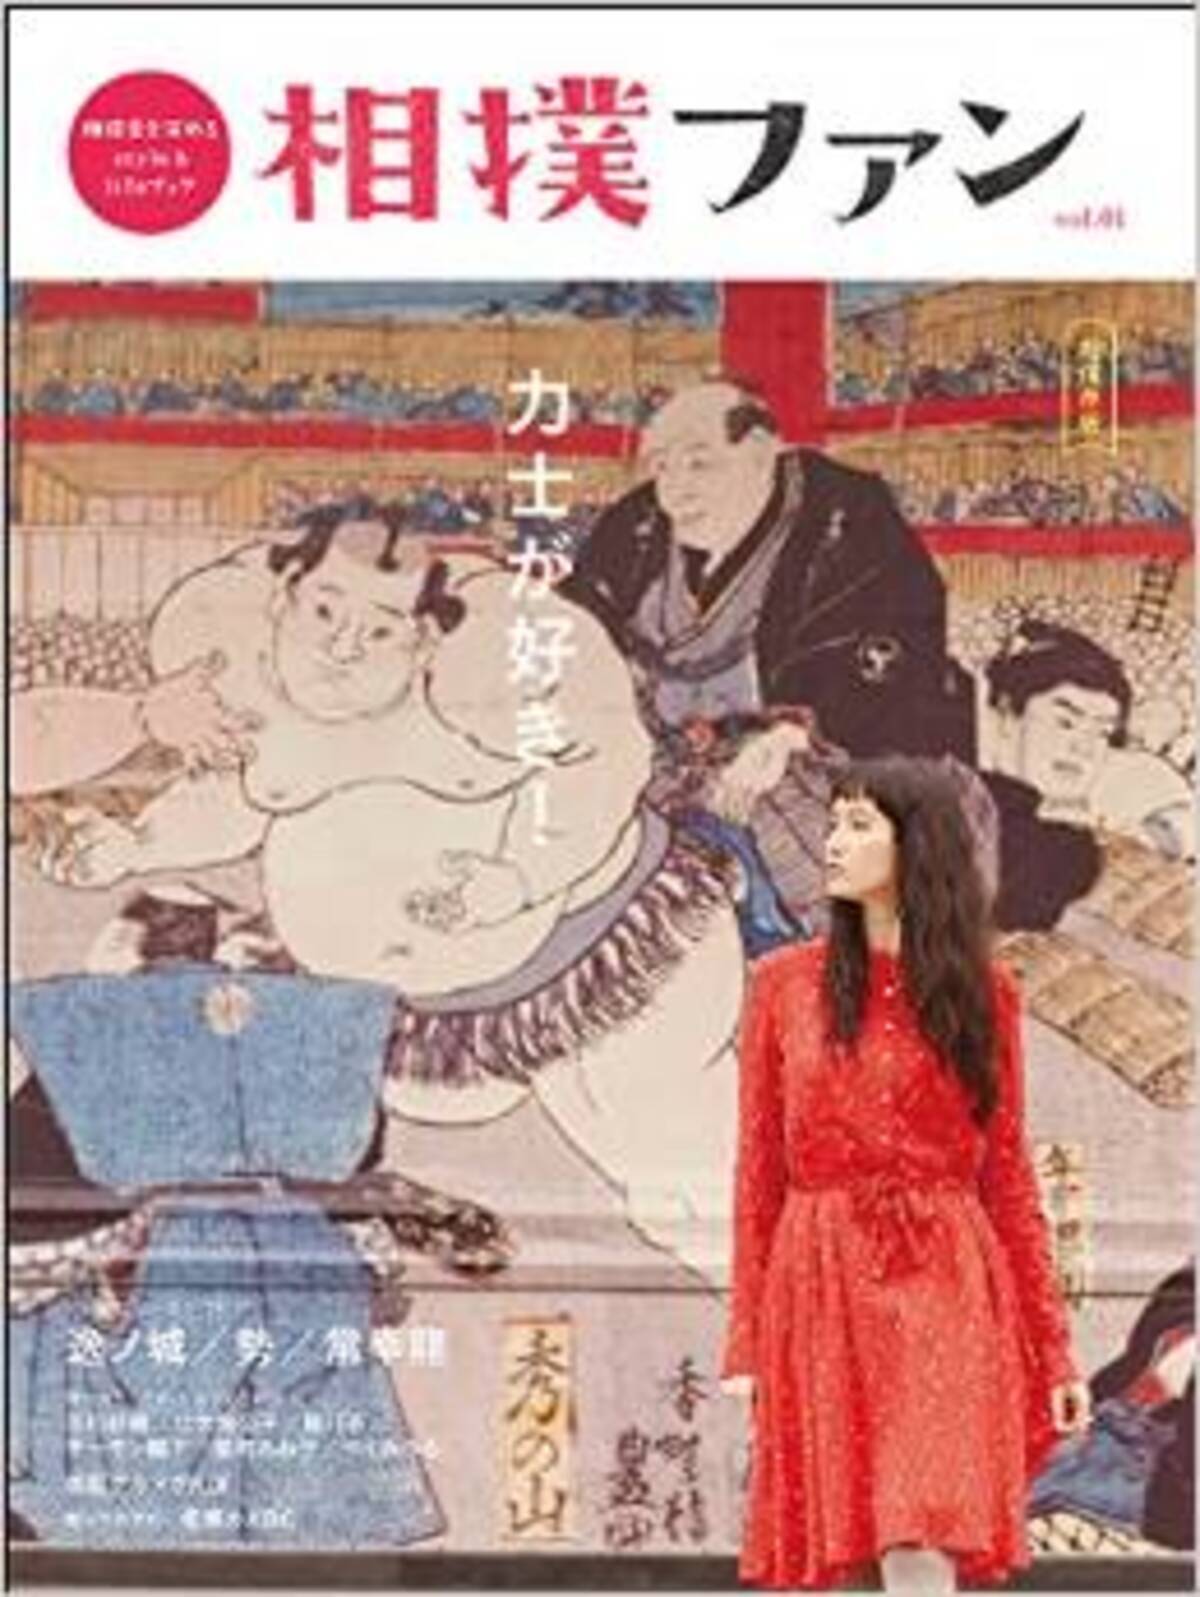 女子オンリーの相撲雑誌をつくりたい と言われて 新雑誌 相撲ファン の挑戦2 エキサイトニュース